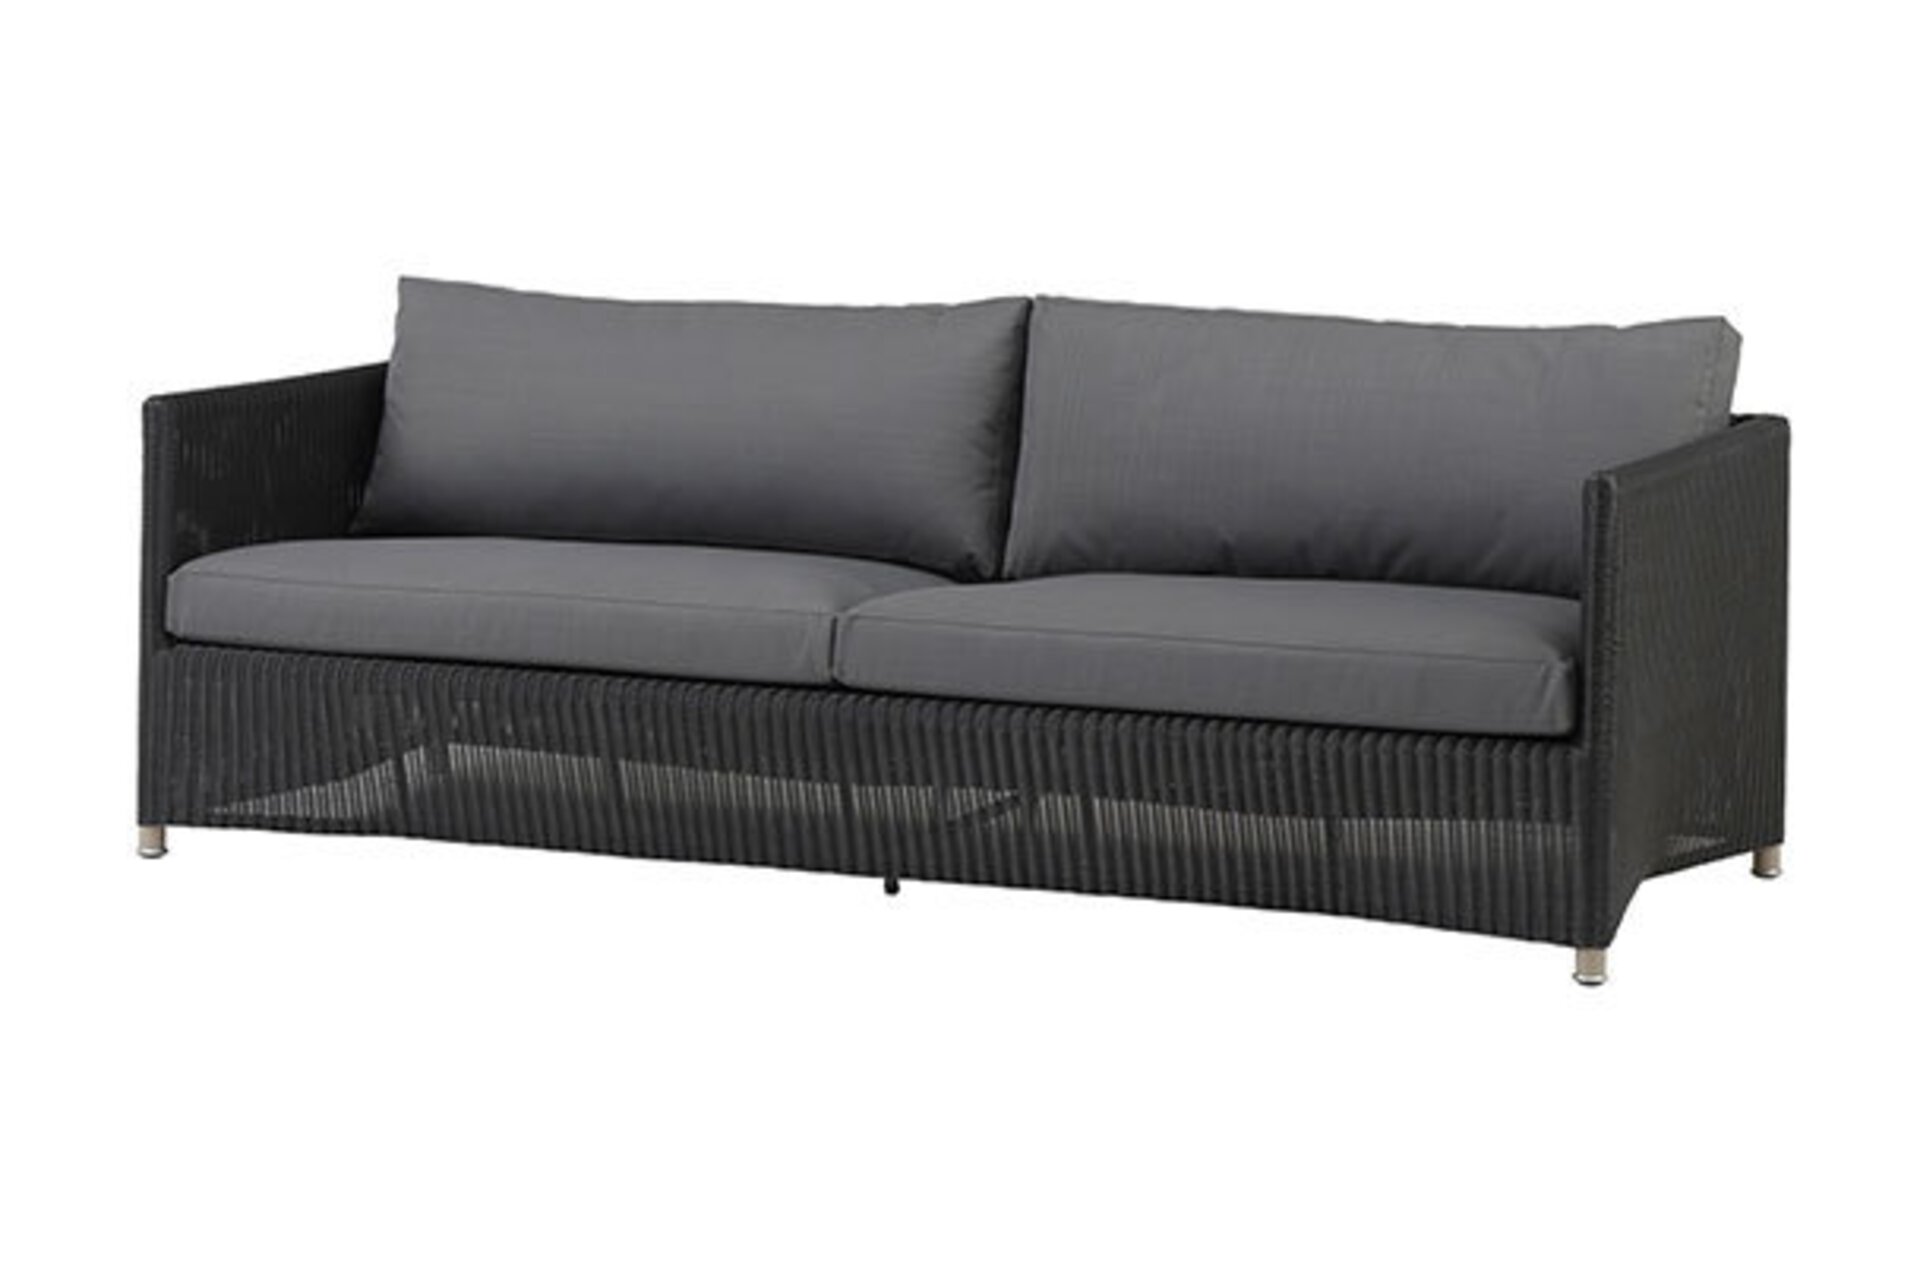 Das Diomond 3-Sitzer Sofa von Cane-line